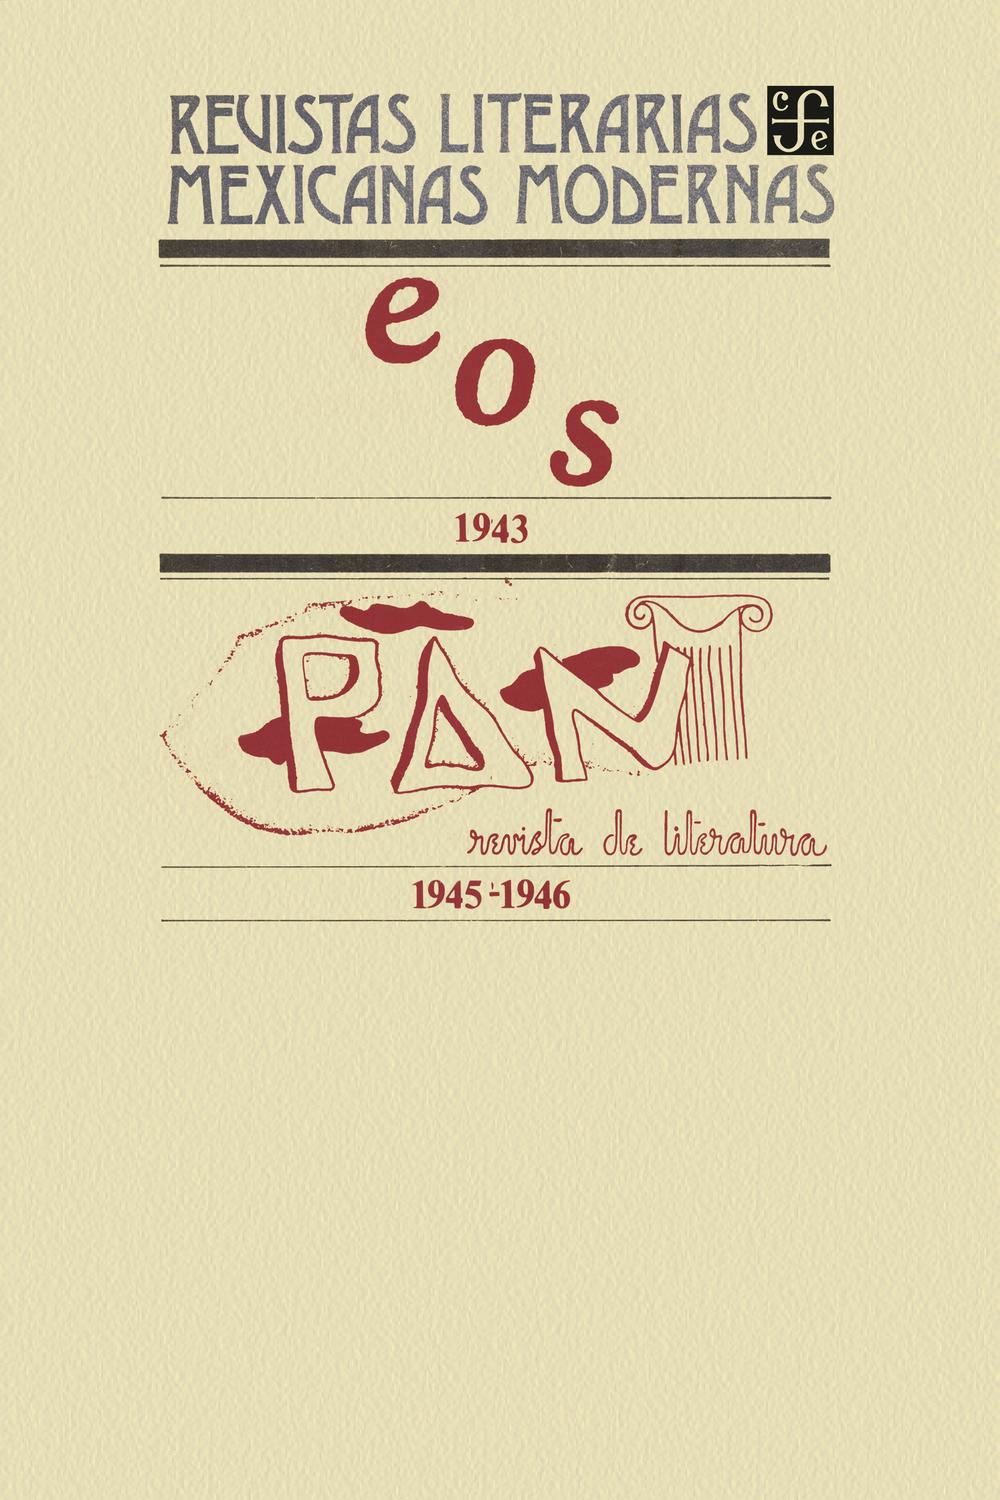 Eos, 1943-Pan. Revista de literatura, 1945-1946 - varios autores